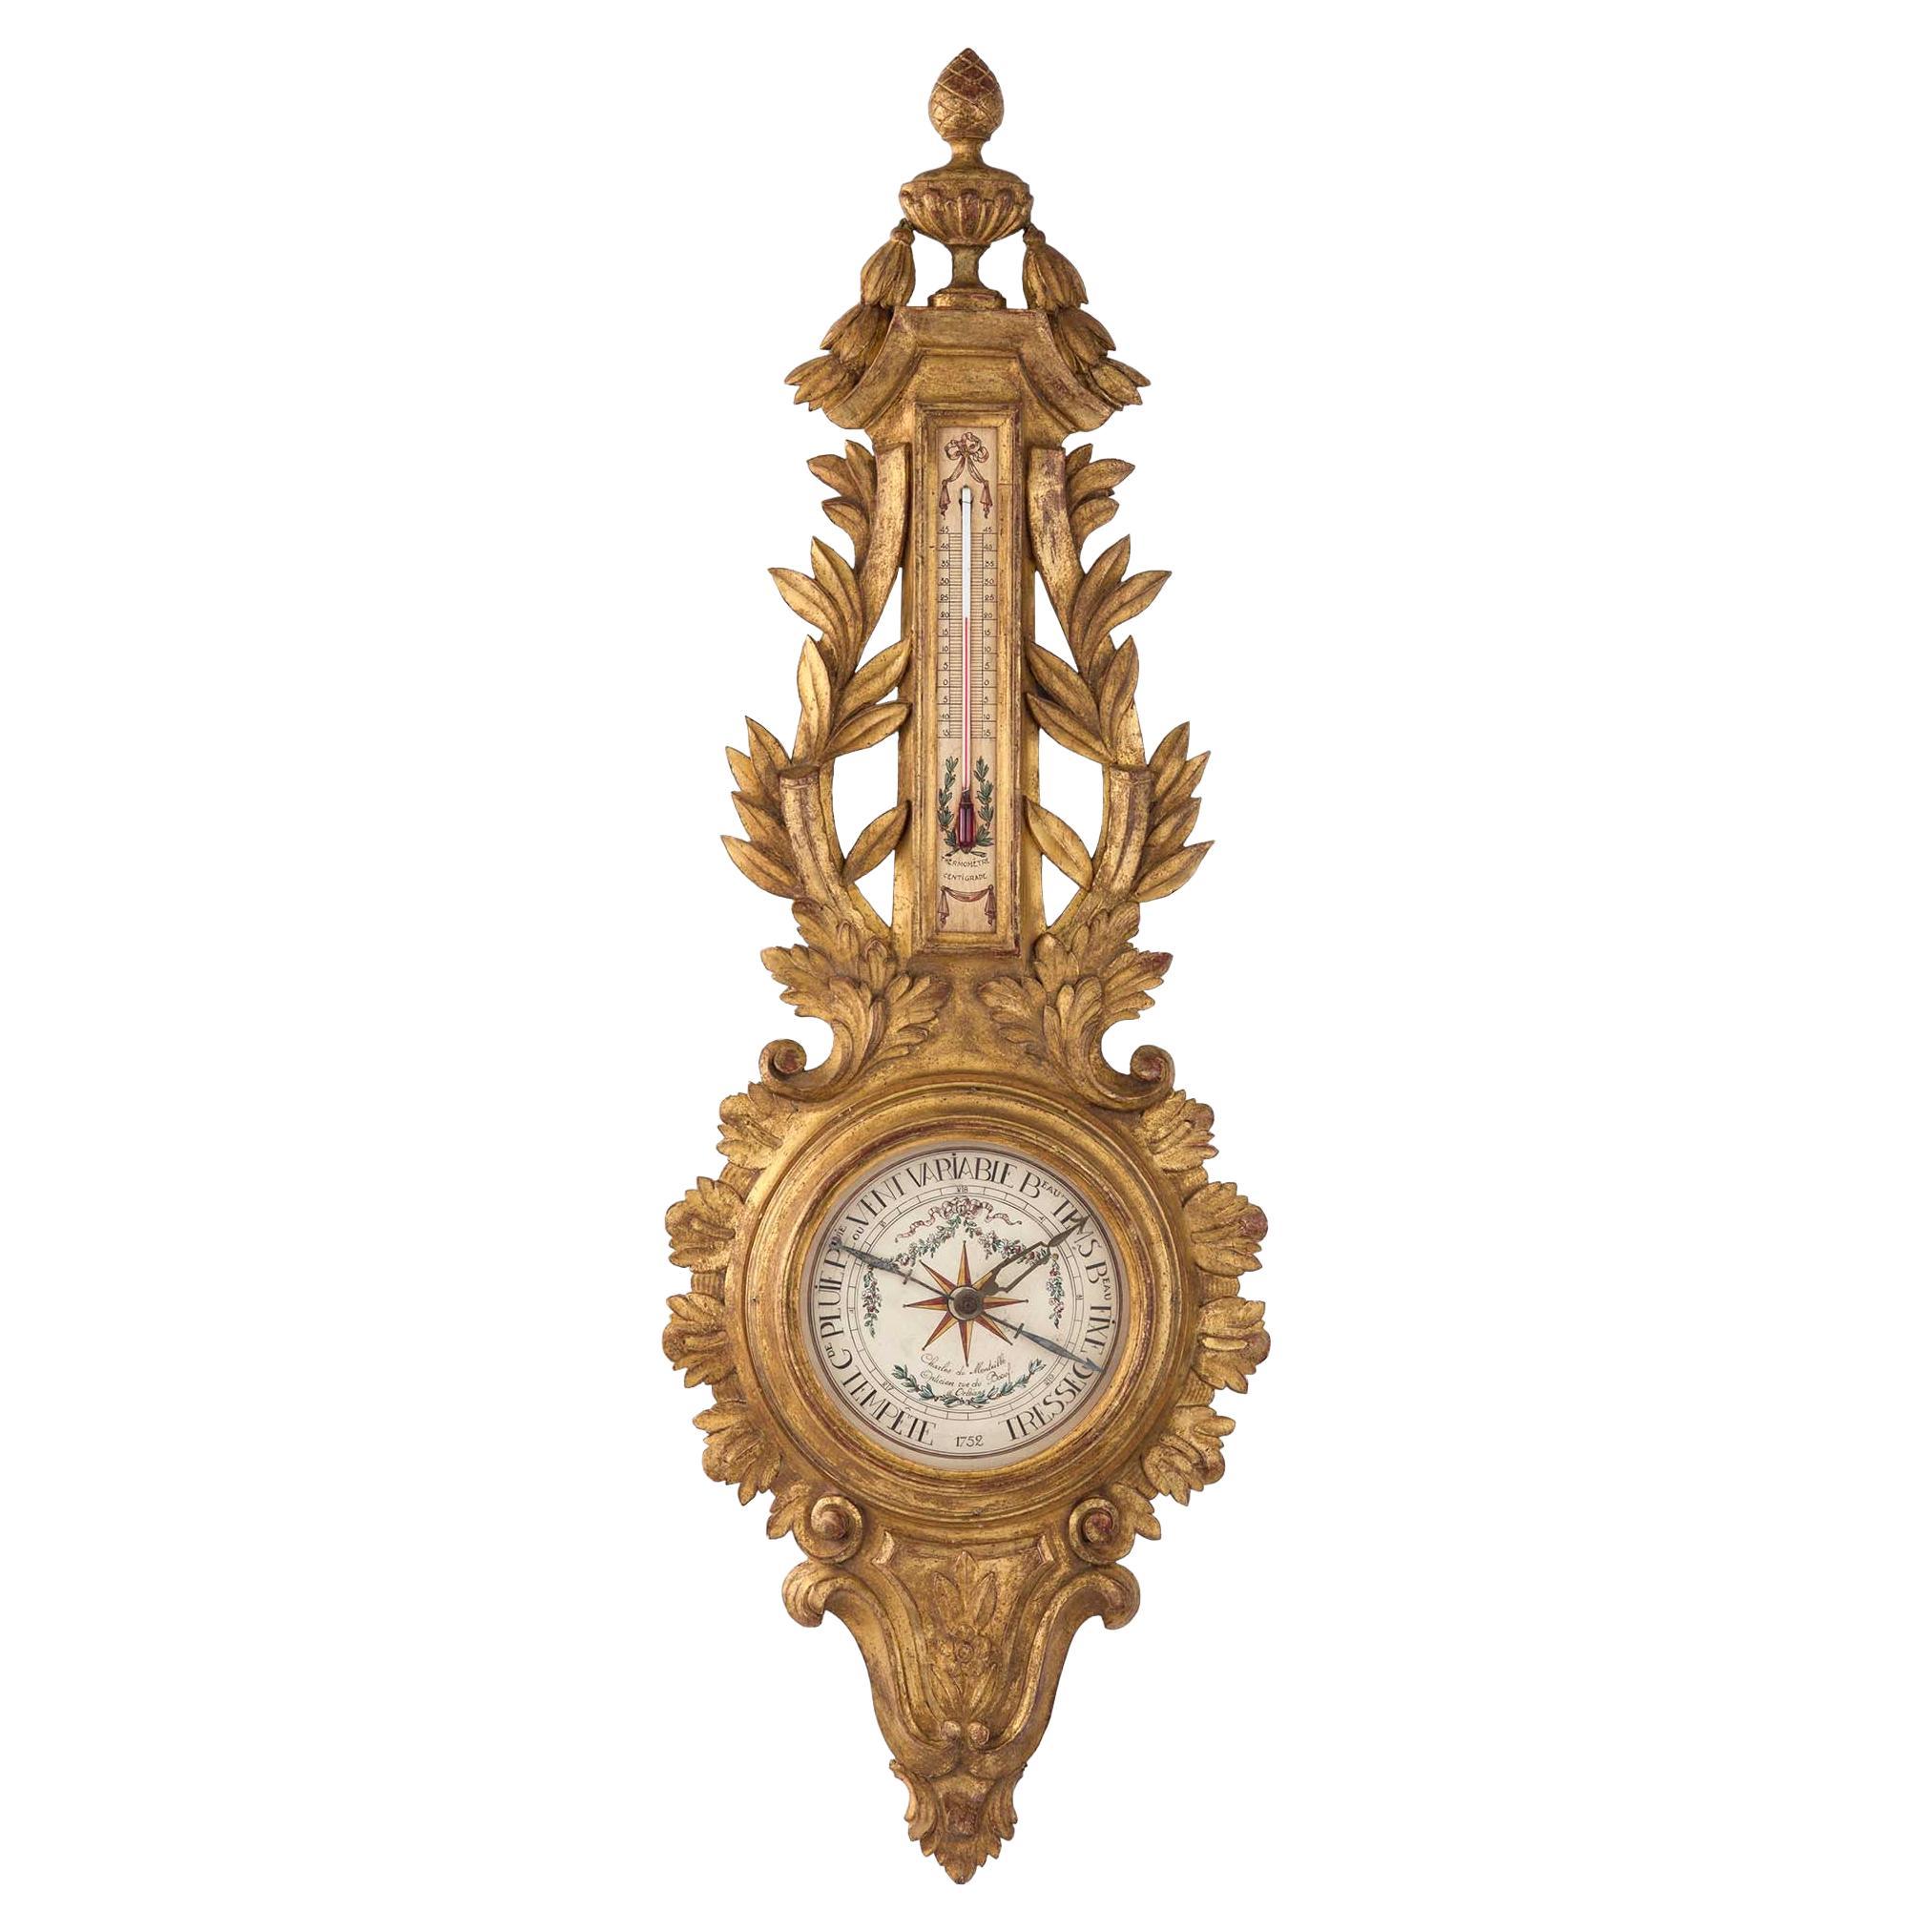 Baromètre en bois doré de style Louis XVI de la fin du XIXe siècle français